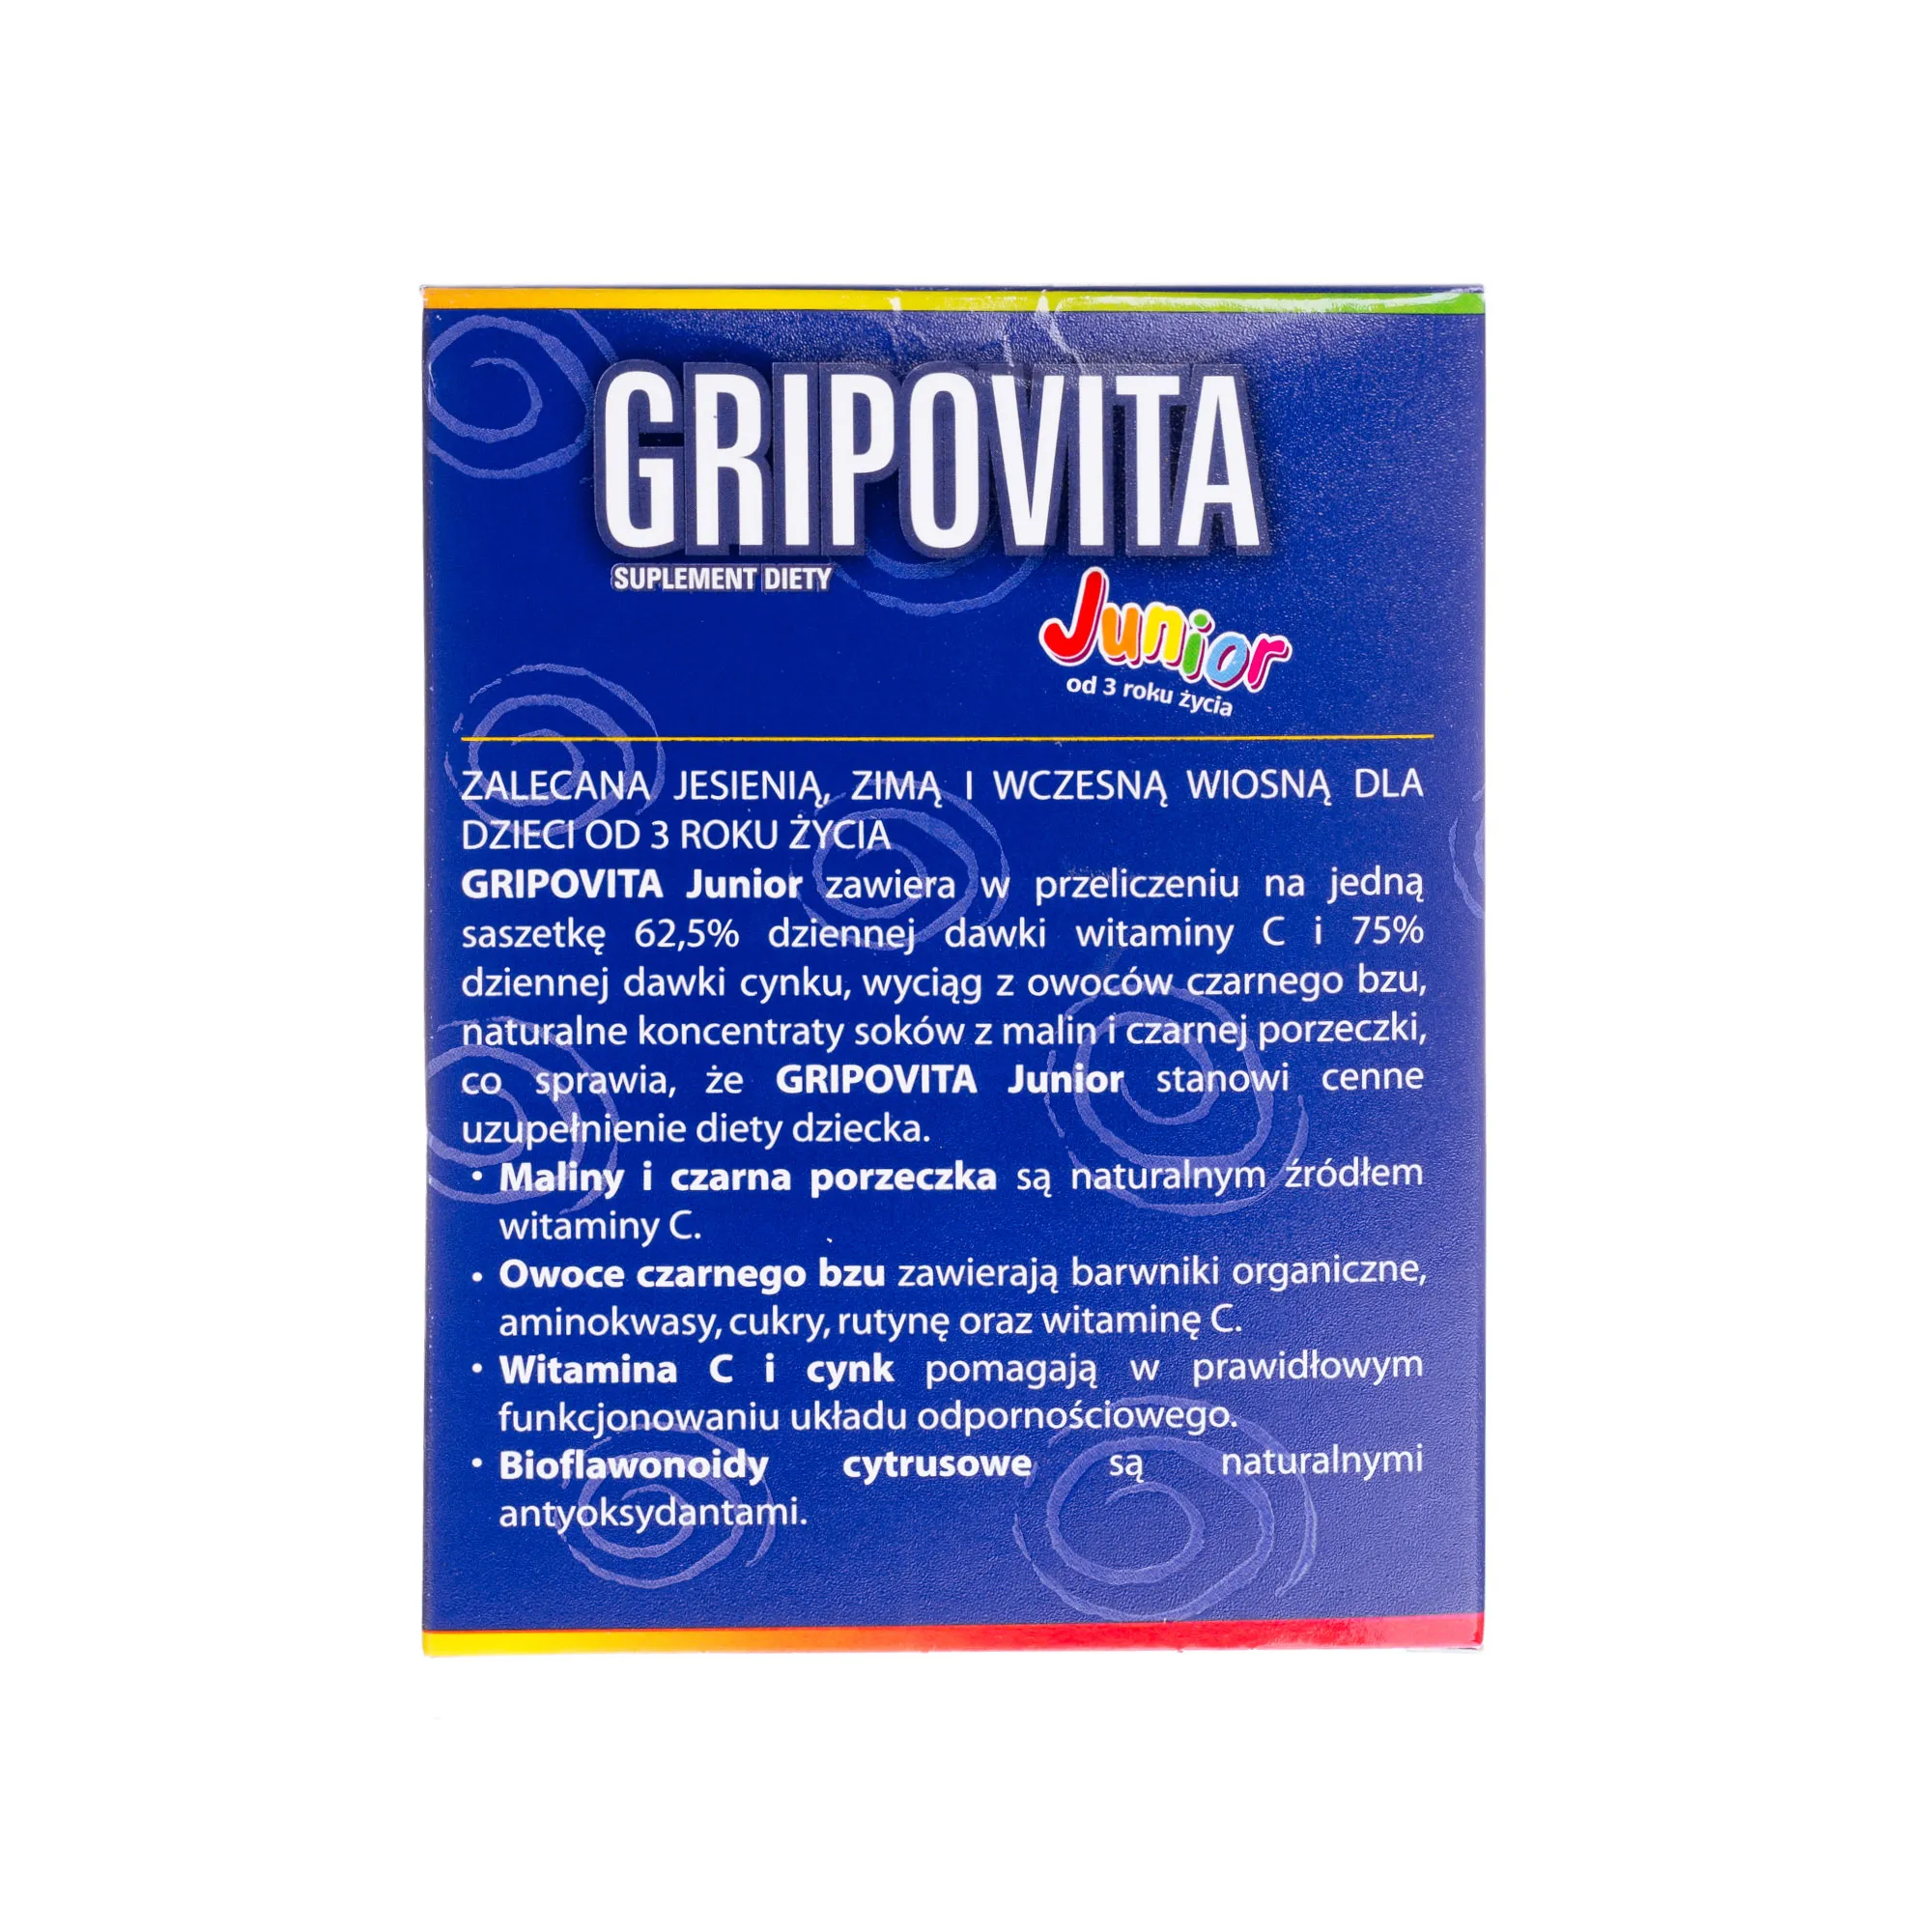 Gripovita Junior, suplement diety, 10 saszetek 